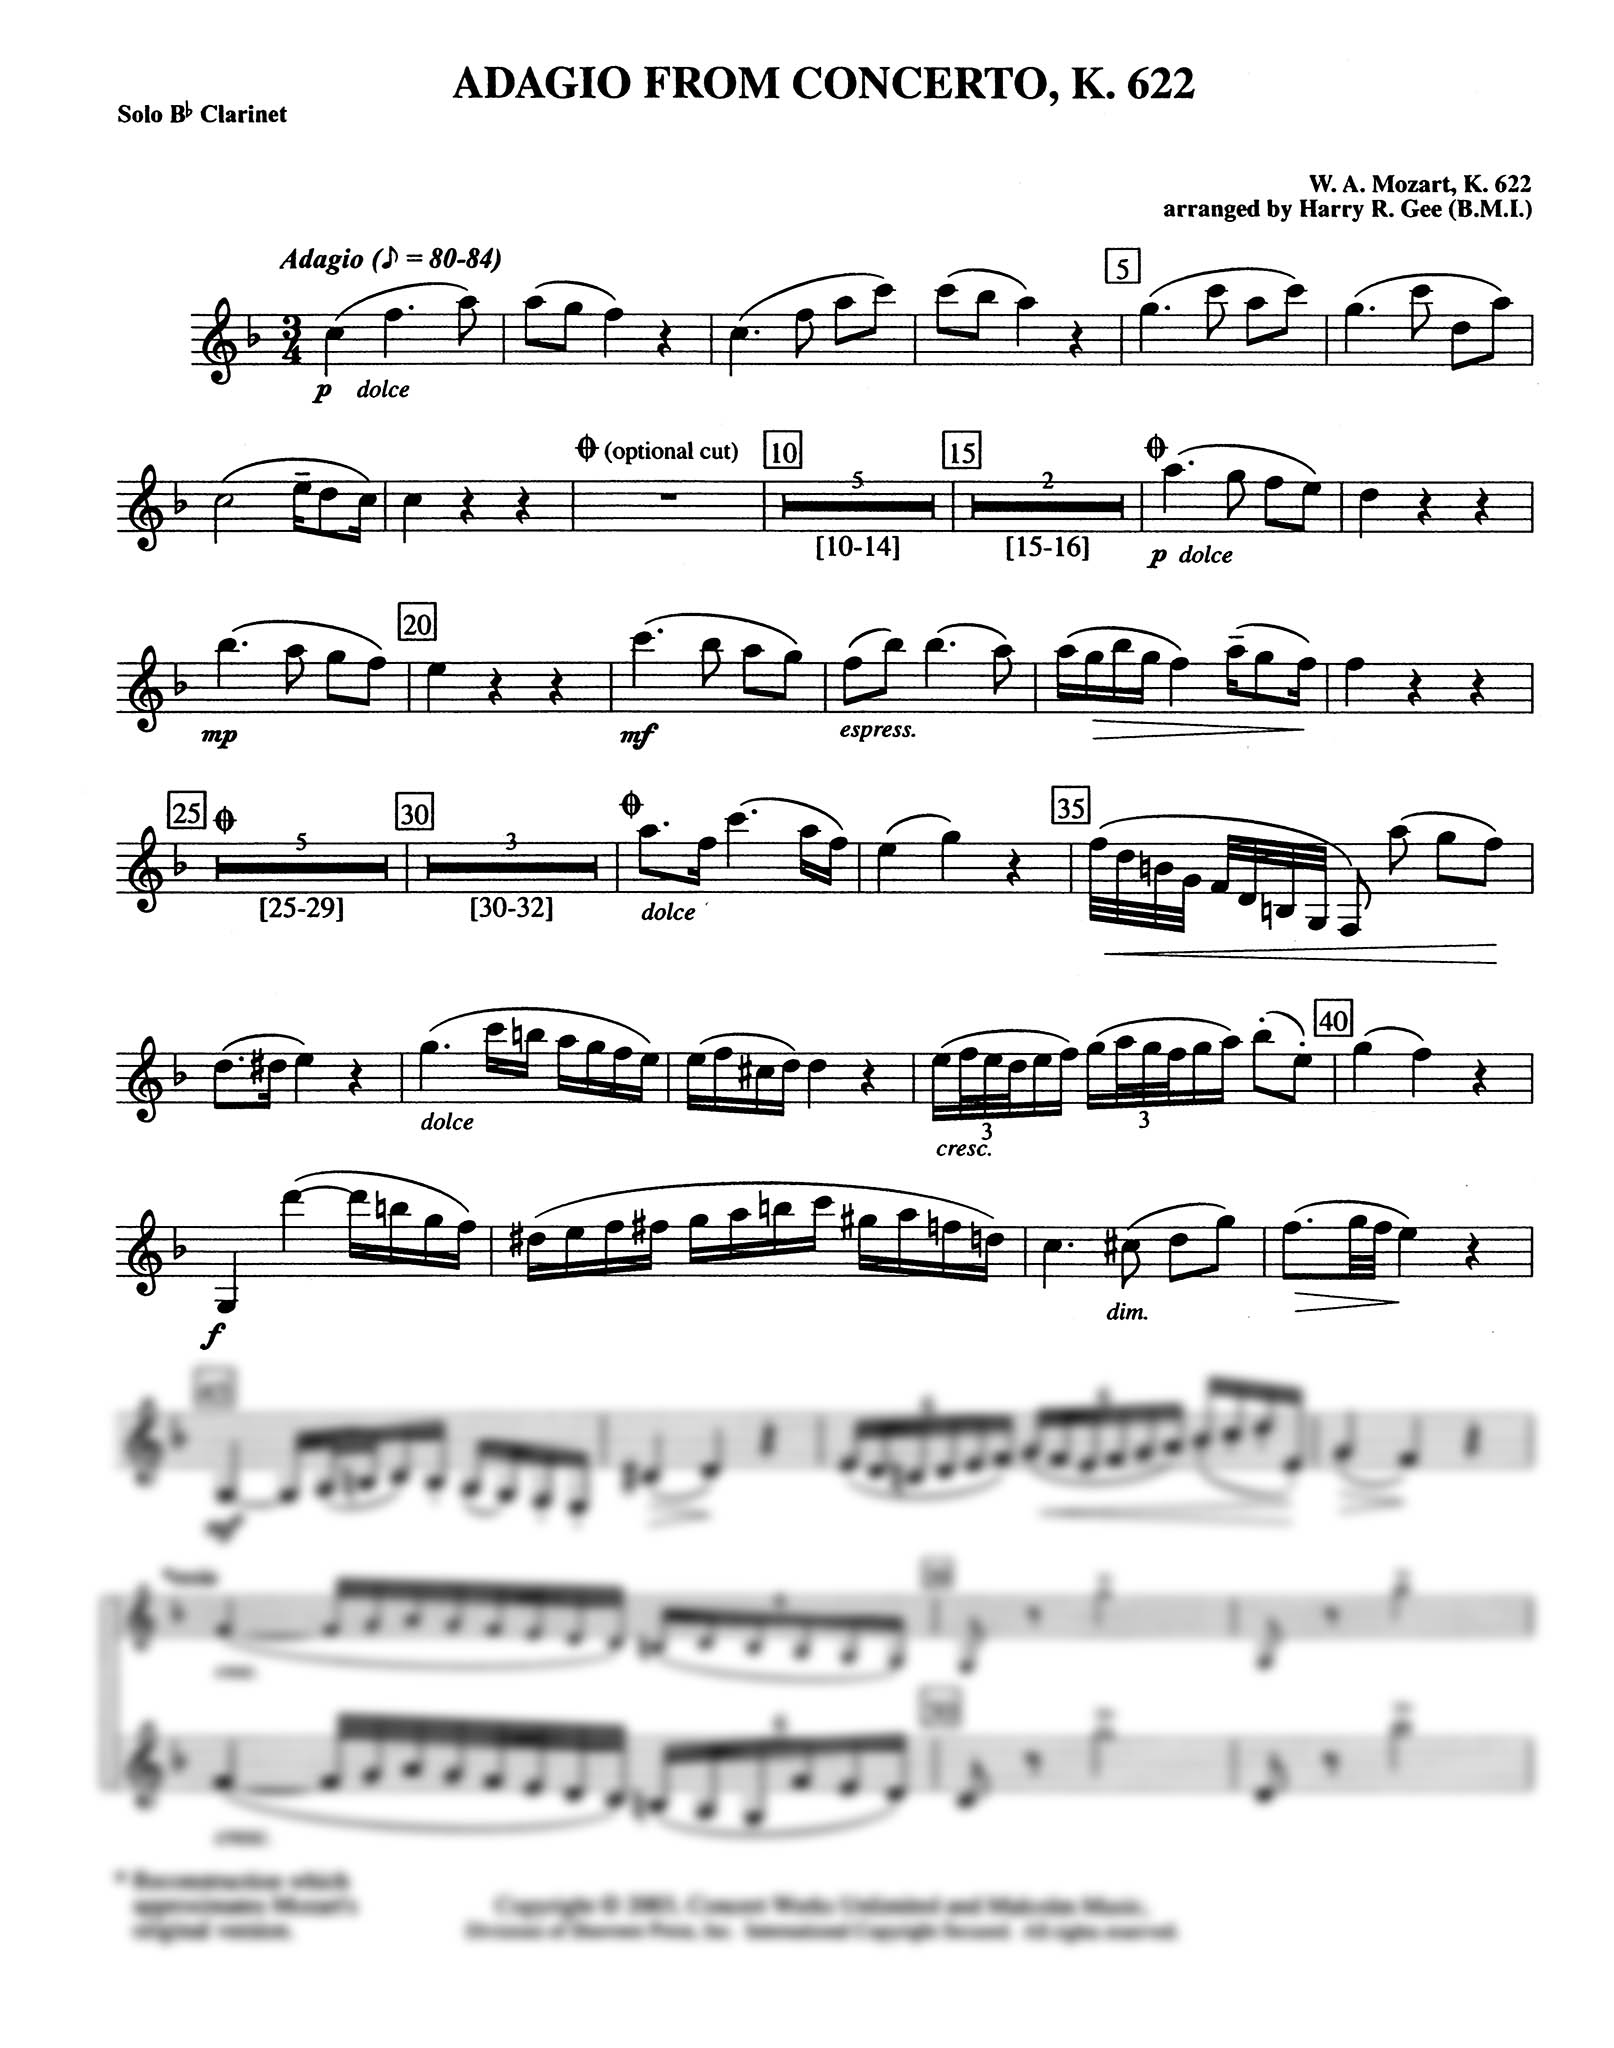 Adagio Clarinet part